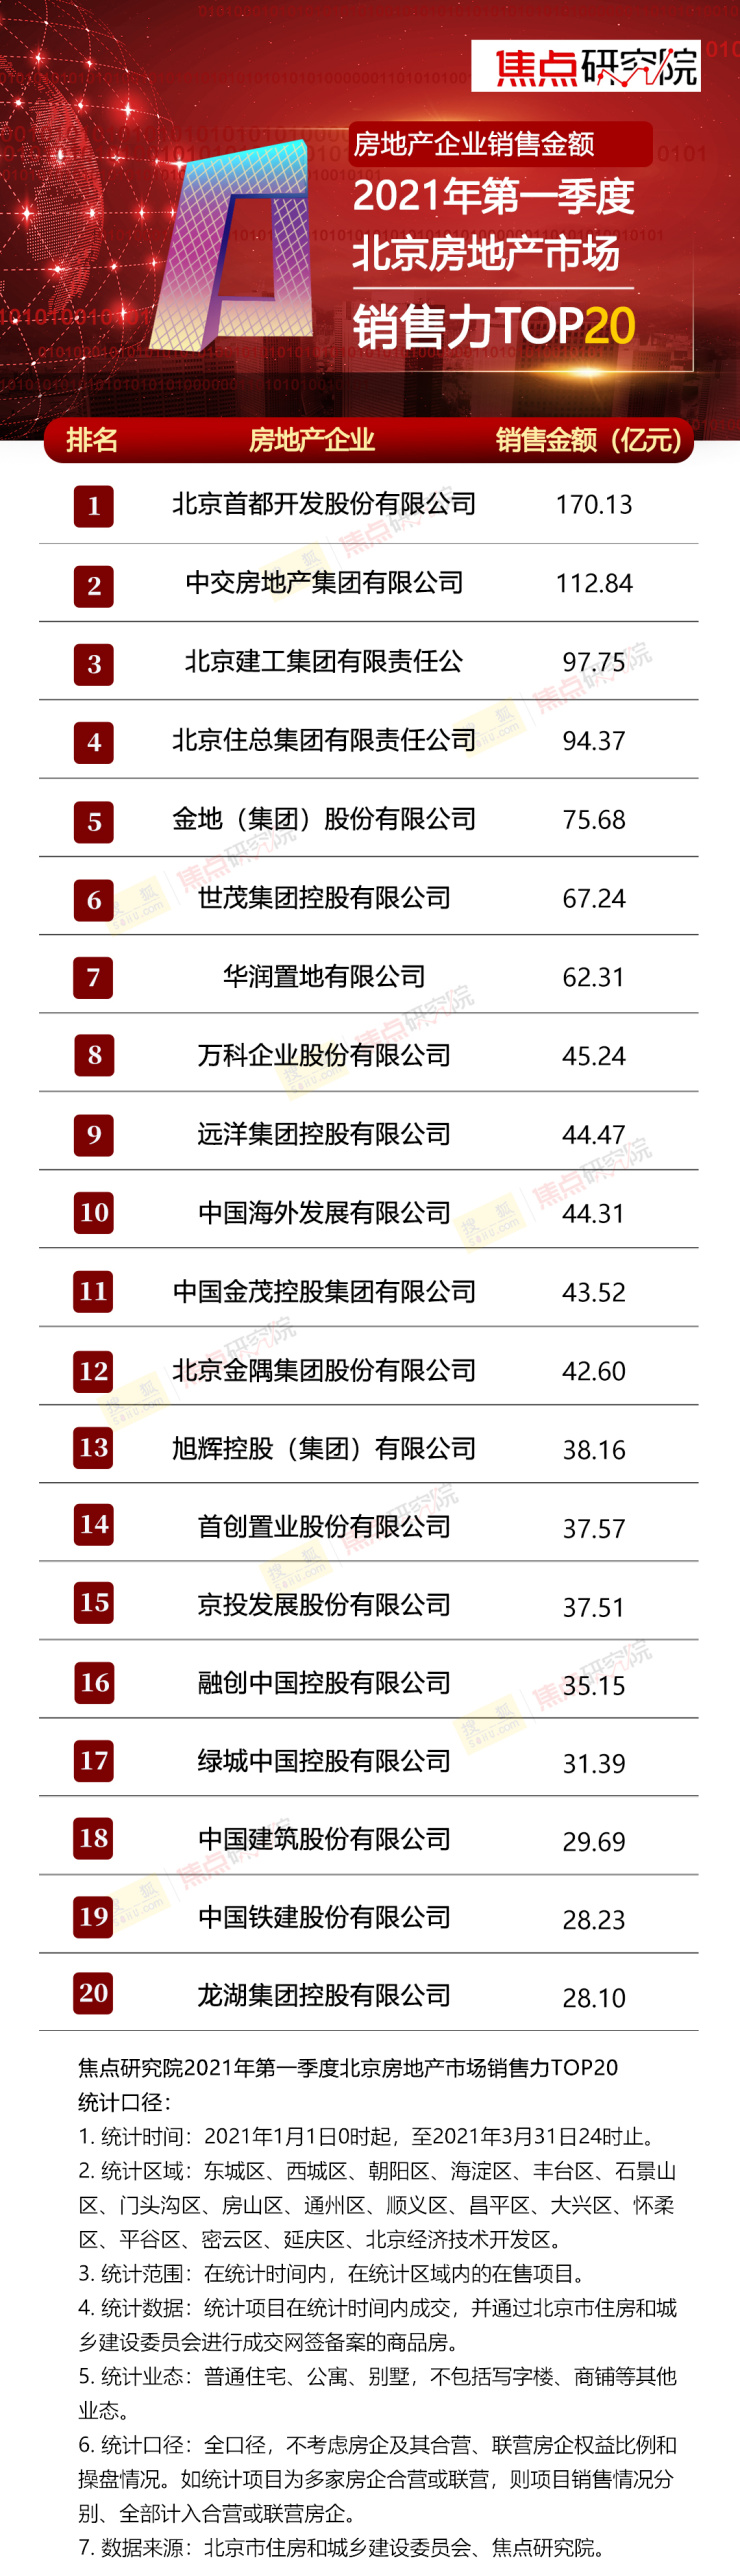 权威发布2021年第一季度北京房地产市场销售力TOP20